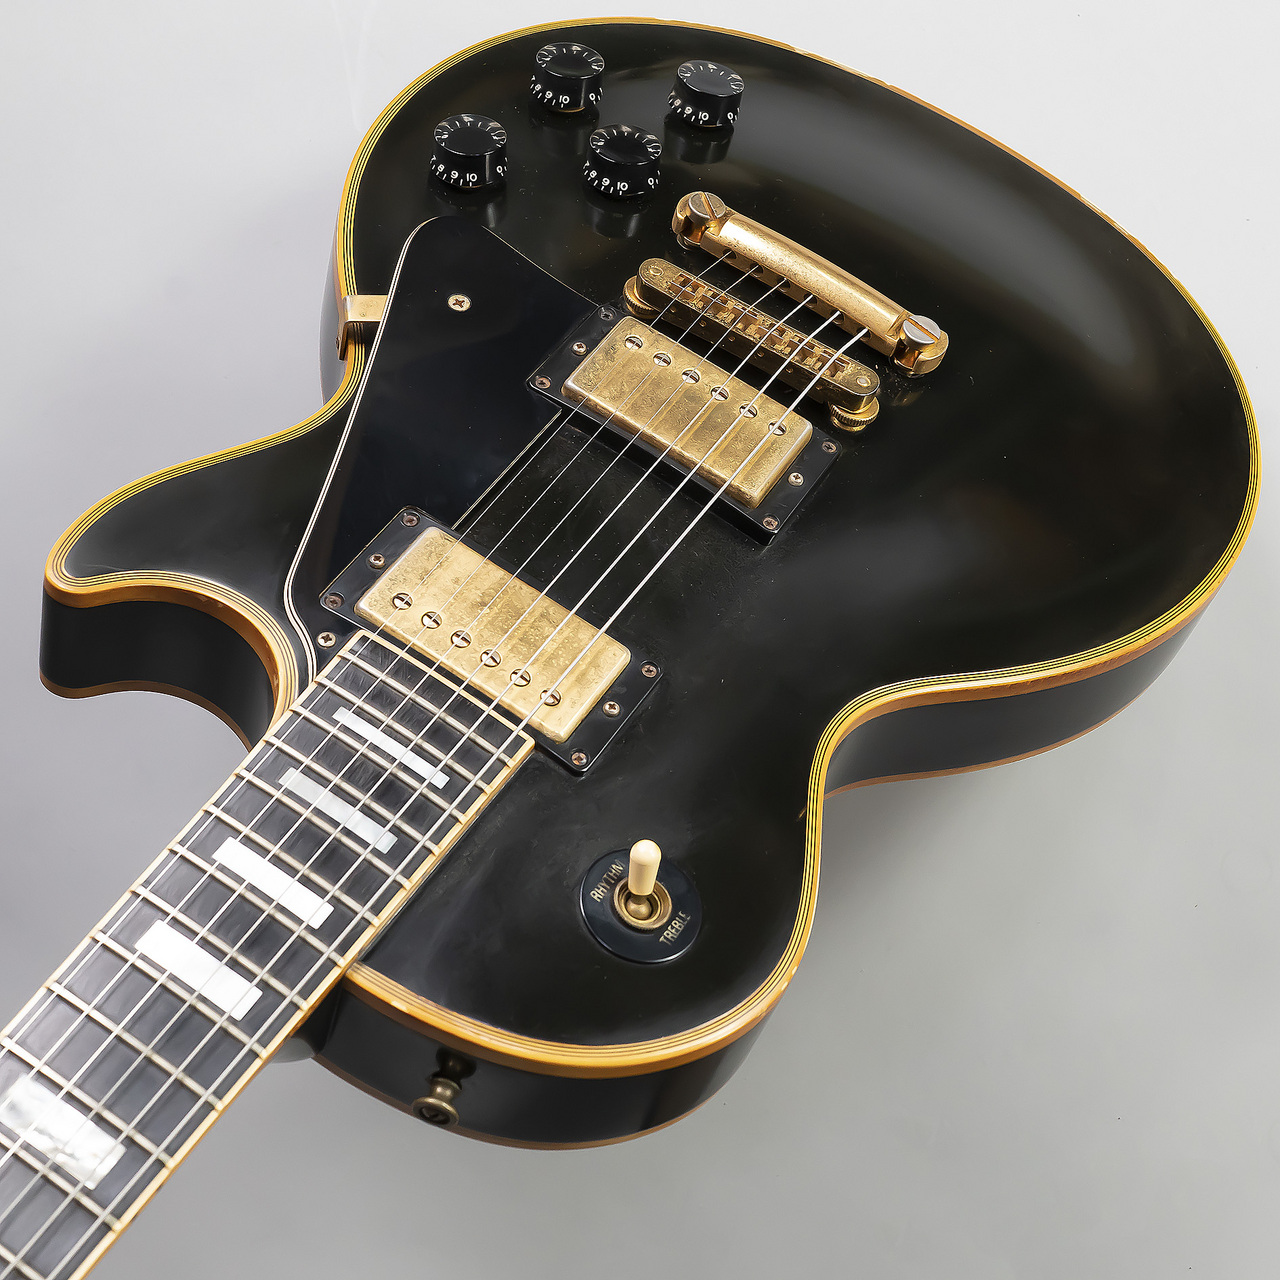 *Gibson Les Paul CUSTOM 全体的に経年劣化による塗装剥がれやクラック、クリア層の剥がれがあります。バックには若干打痕がございます。しかし、ネックの状態は良く、フレットの消耗も少なく状態は良好です。シリアルナンバーから90年代後半の物だと思われますがこの年代でこのコンディションの […]